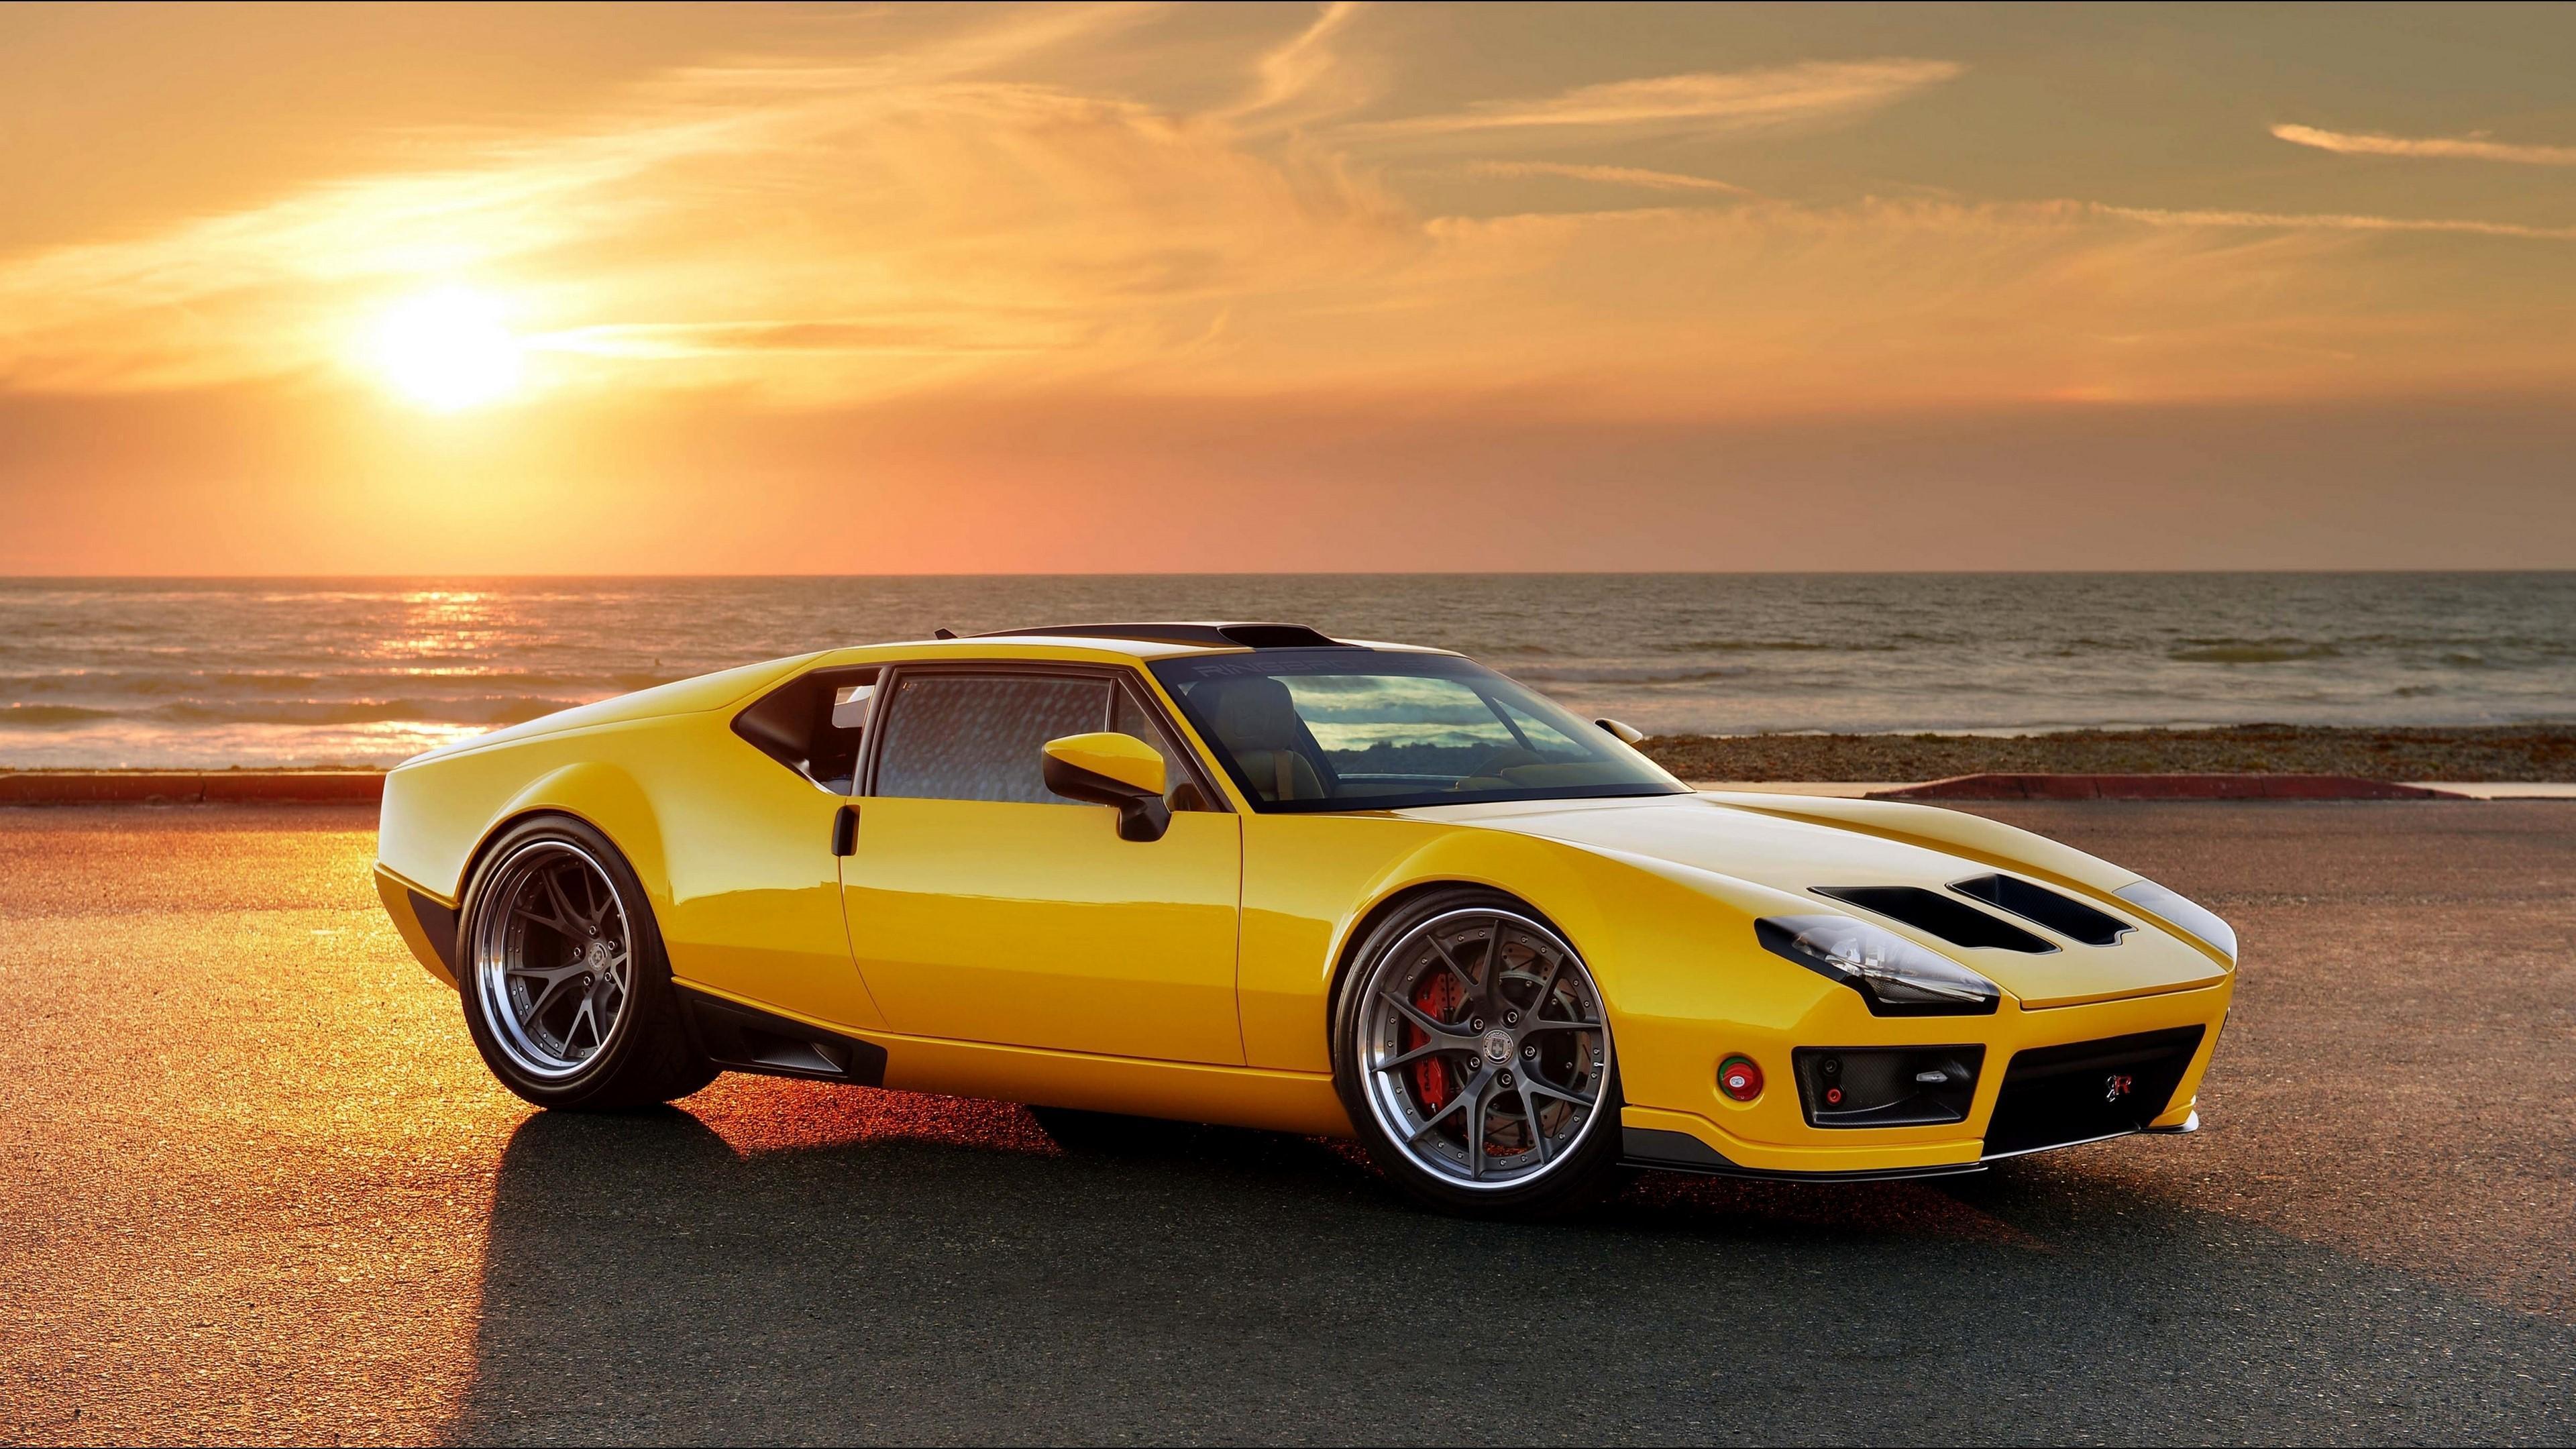 HD wallpaper, Car, Yellow Car 4K, Ocean, Sport Car, De Tomaso Pantera